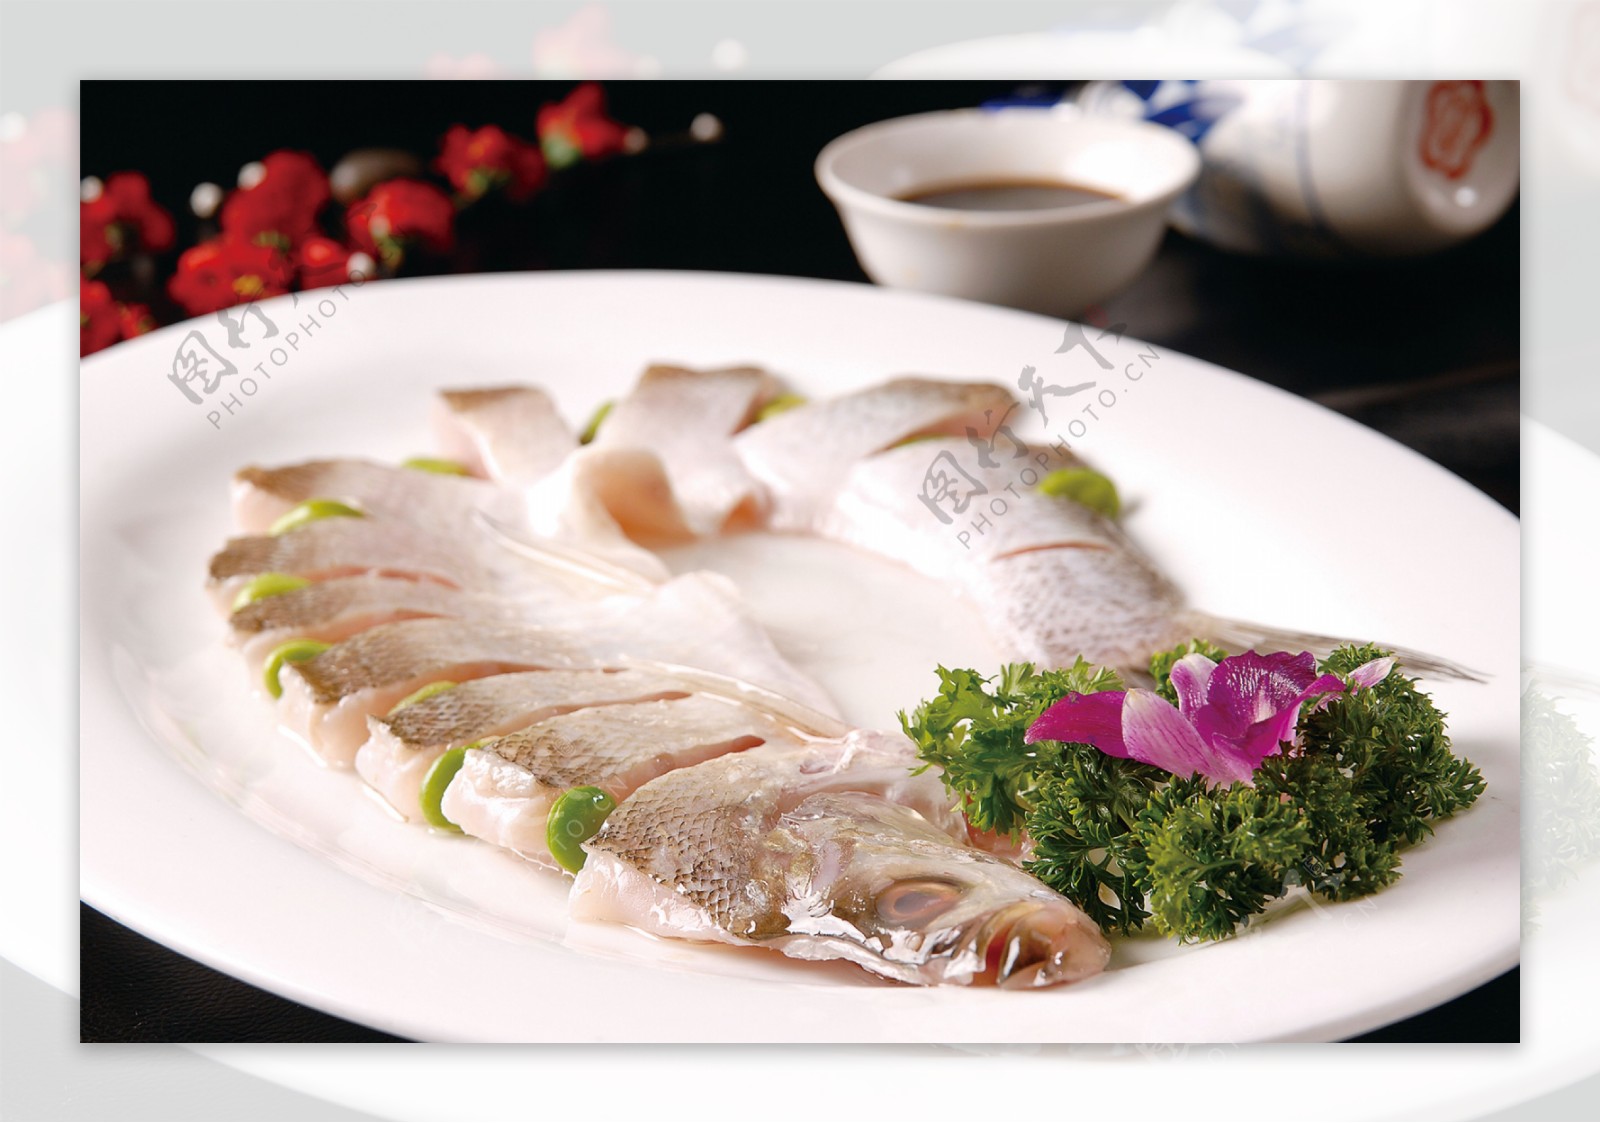 明厨料理 XiaoMing's Kitchen: 清蒸白鱼 Steam White Snapper Fish